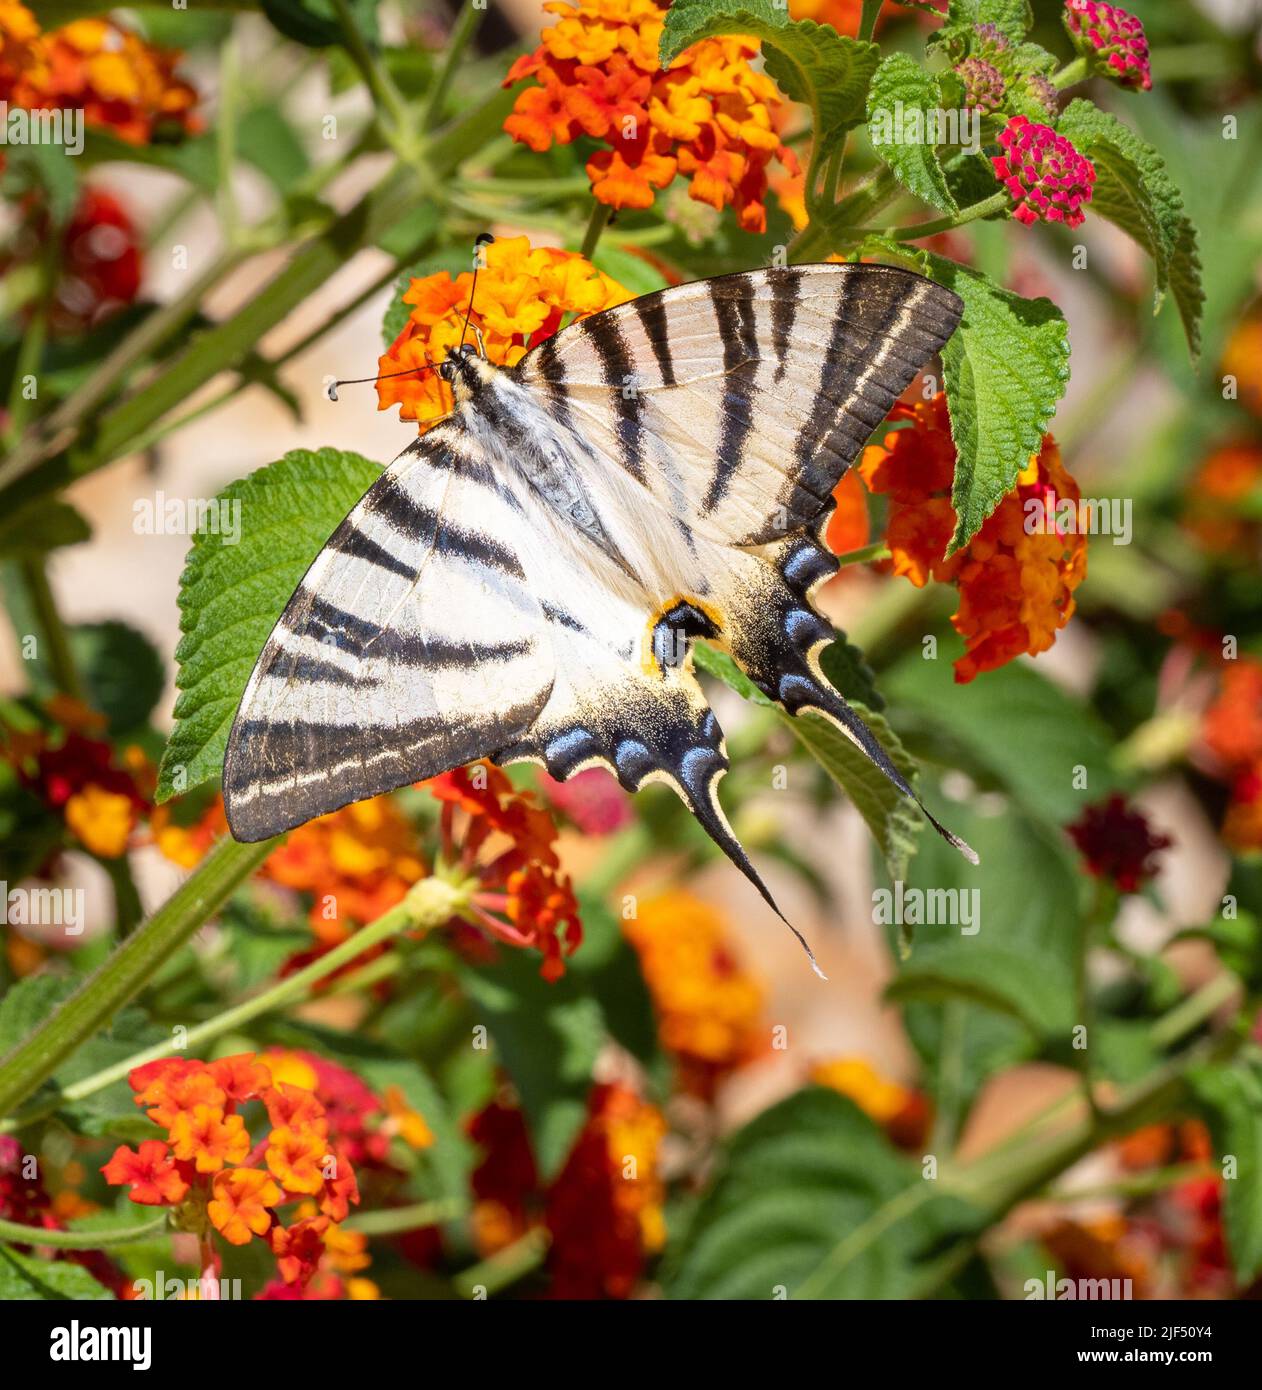 Escasa cola de golondrina Iphiclides podalirius sobre flores de Lantana ricas en néctar anaranjado en un jardín en Lefkada en las Islas Jónicas de Grecia Foto de stock